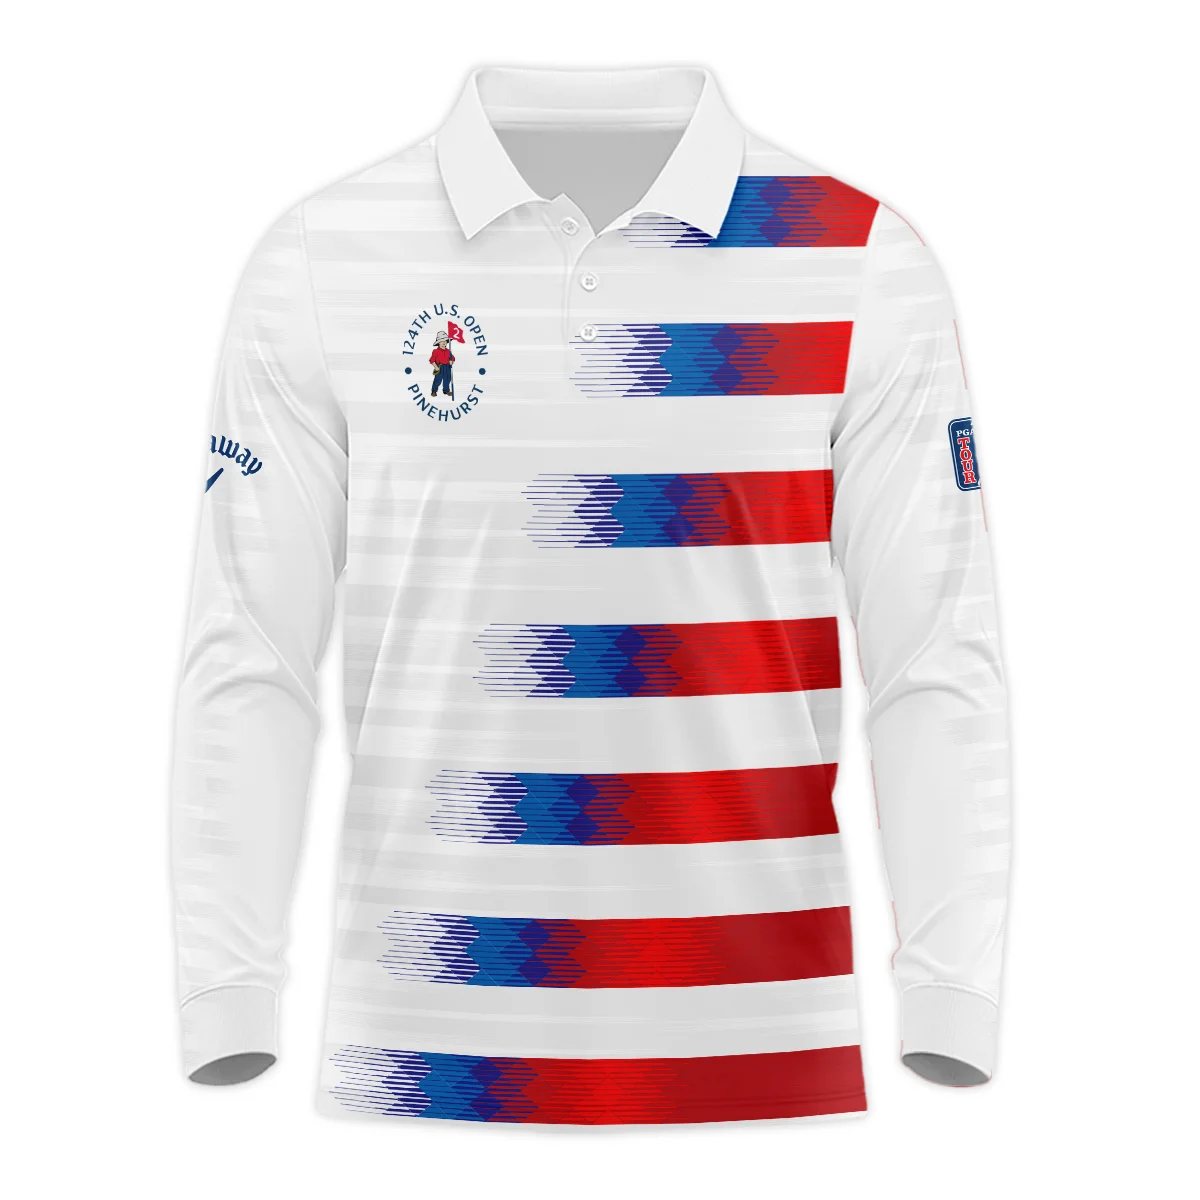 Callaway 124th U.S. Open Pinehurst Golf Sport Zipper Hoodie Shirt Blue Red White Abstract All Over Print Zipper Hoodie Shirt